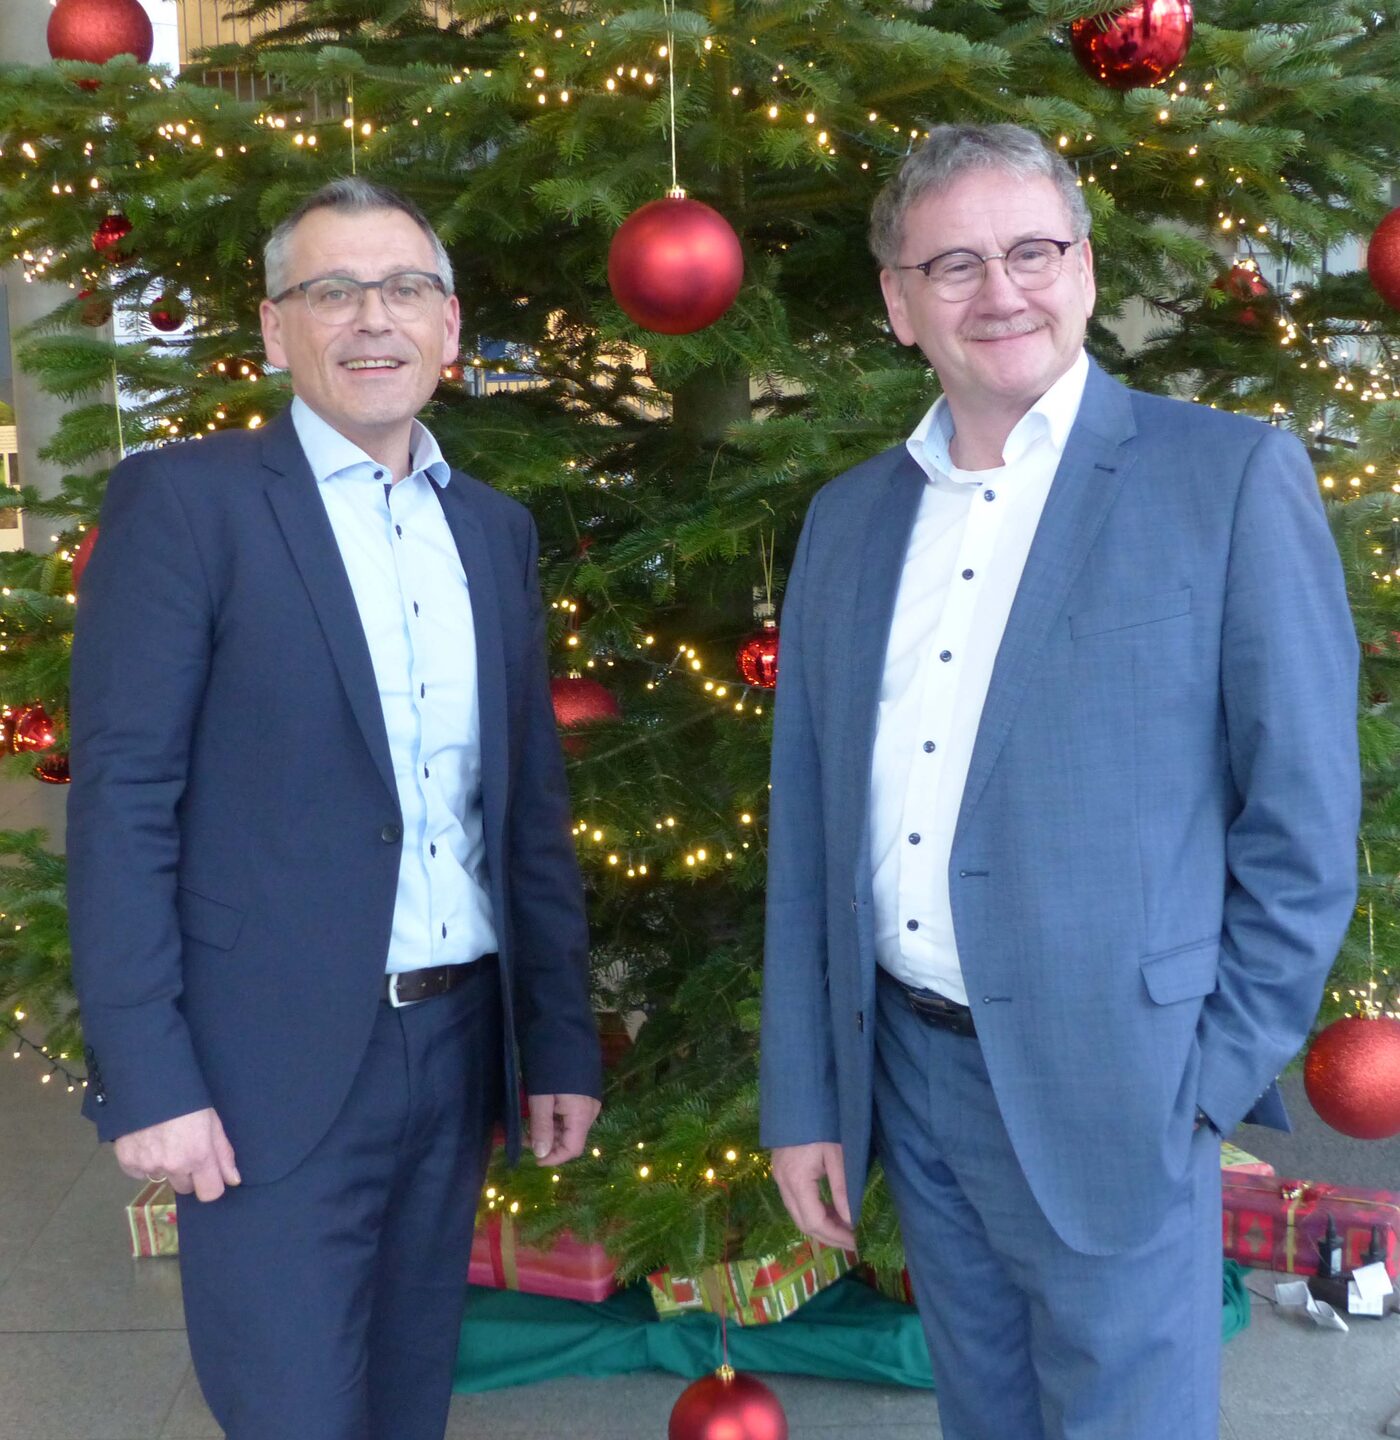 Landrat Uwe Schmidt (rechts) und der Erste Kreisbeigeordnete Andreas Siebert wünschen allen Mitbürgerinnen und Mitbürgern ein friedvolles und fröhliches Weihnachtsfest sowie ein gesundes, erfolgreiches und glückliches Jahr 2020.